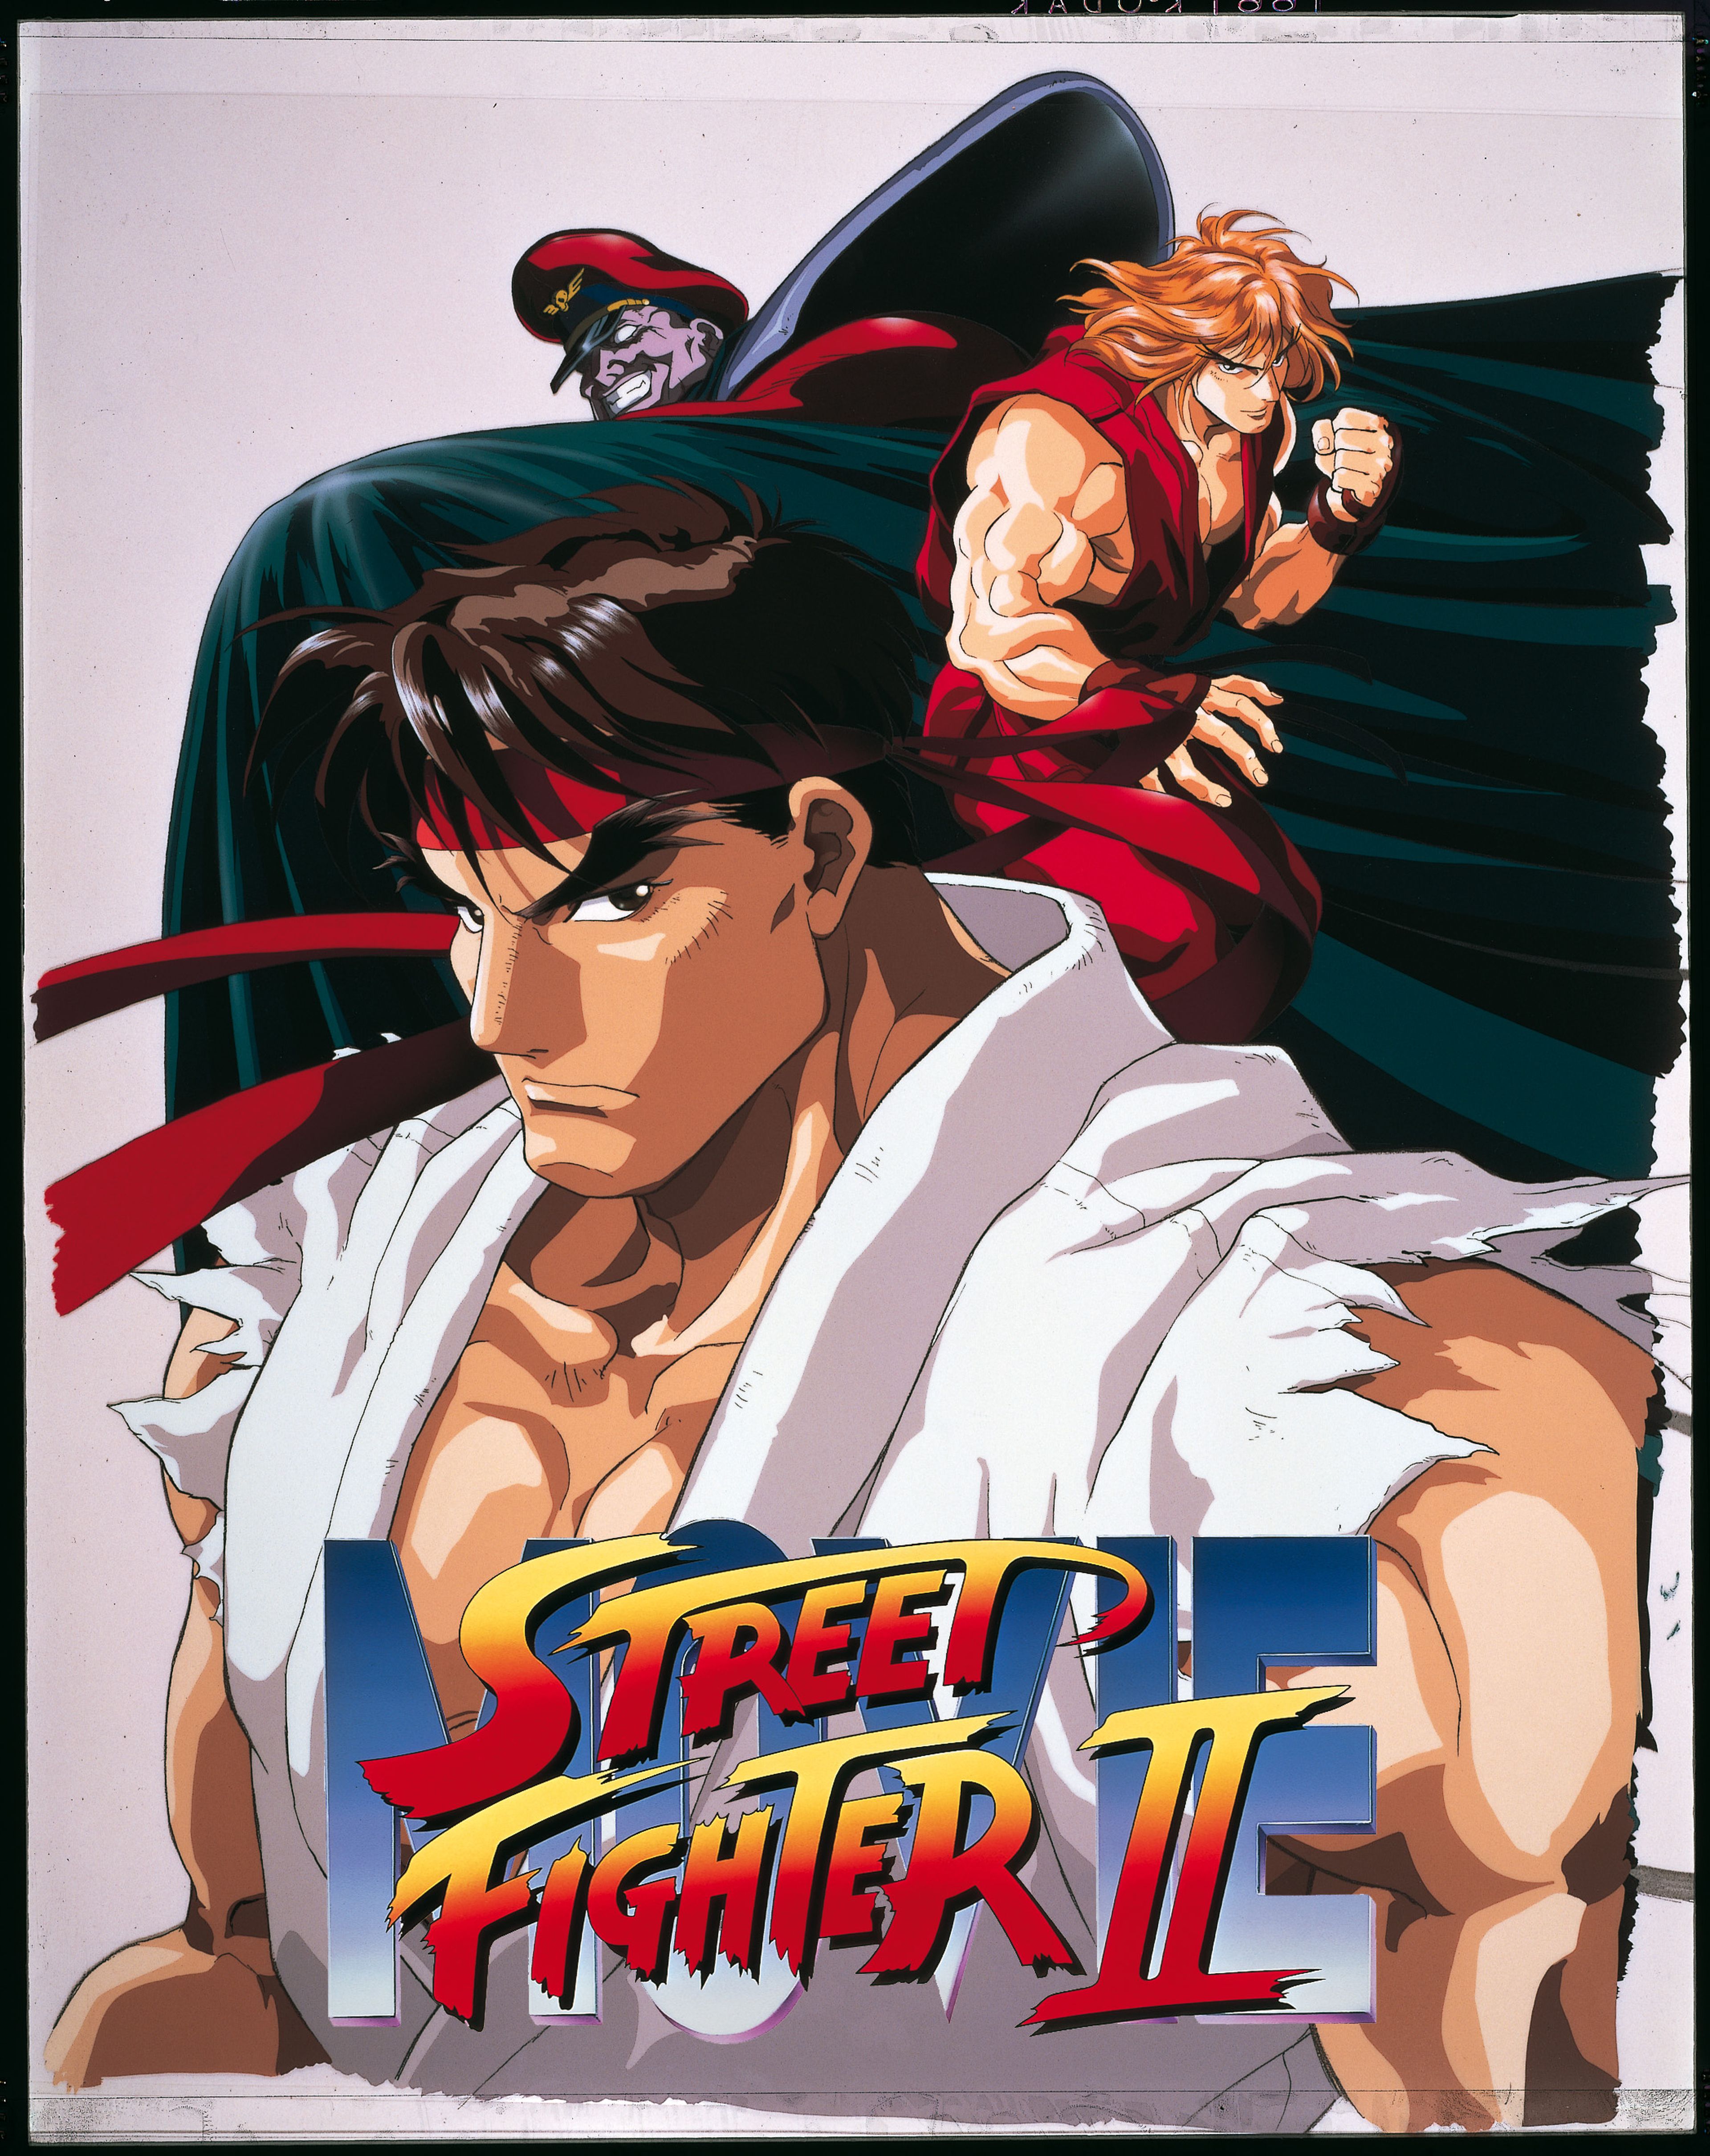 En octubre nos llegará la película de Street Fighter II